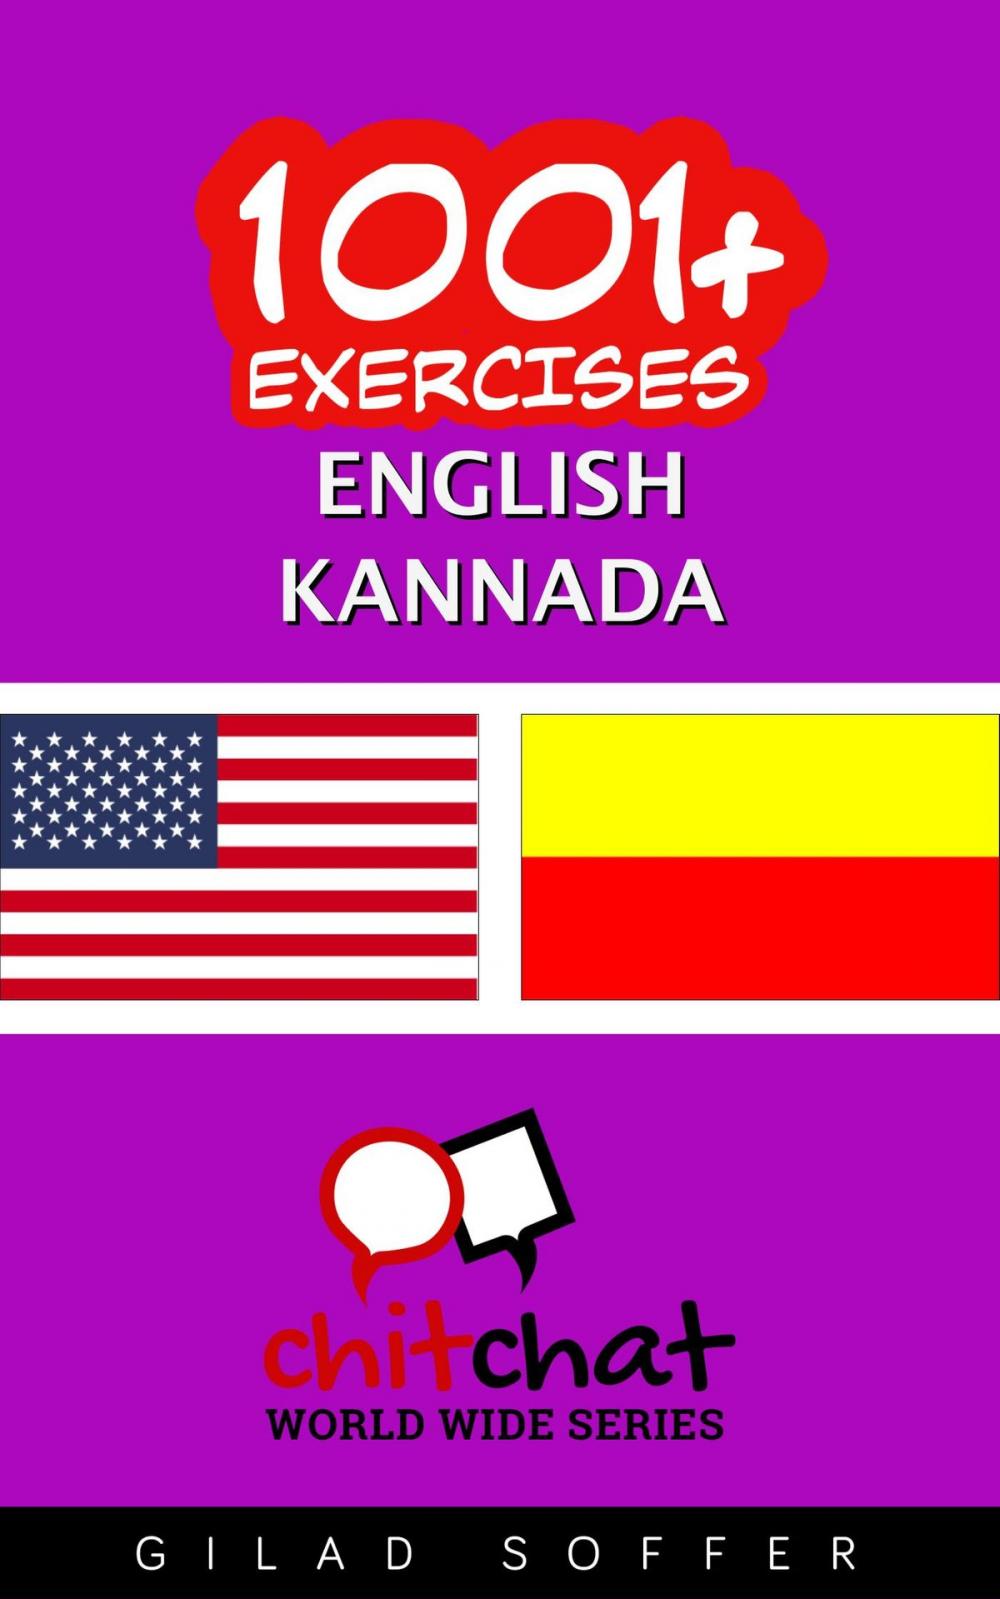 Big bigCover of 1001+ Exercises English - Kannada